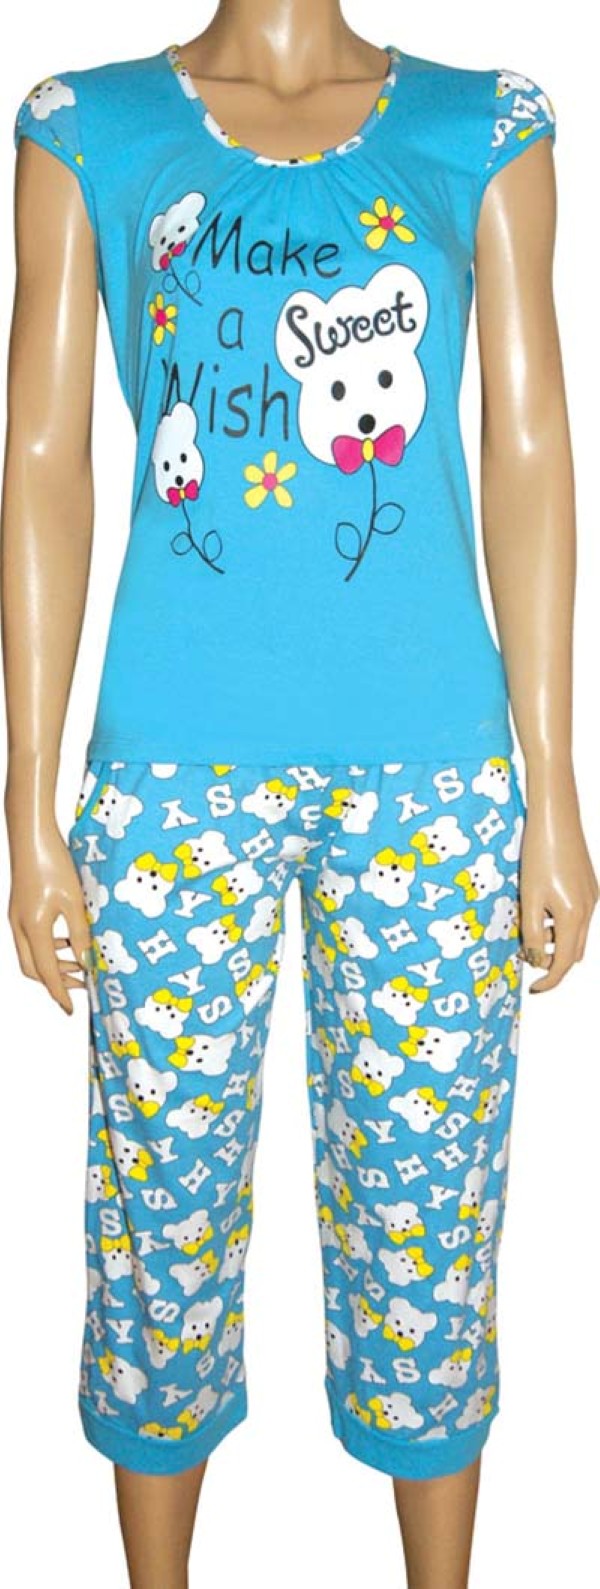 Пижамы для женщин с бриджами (короткий рукав) 82010